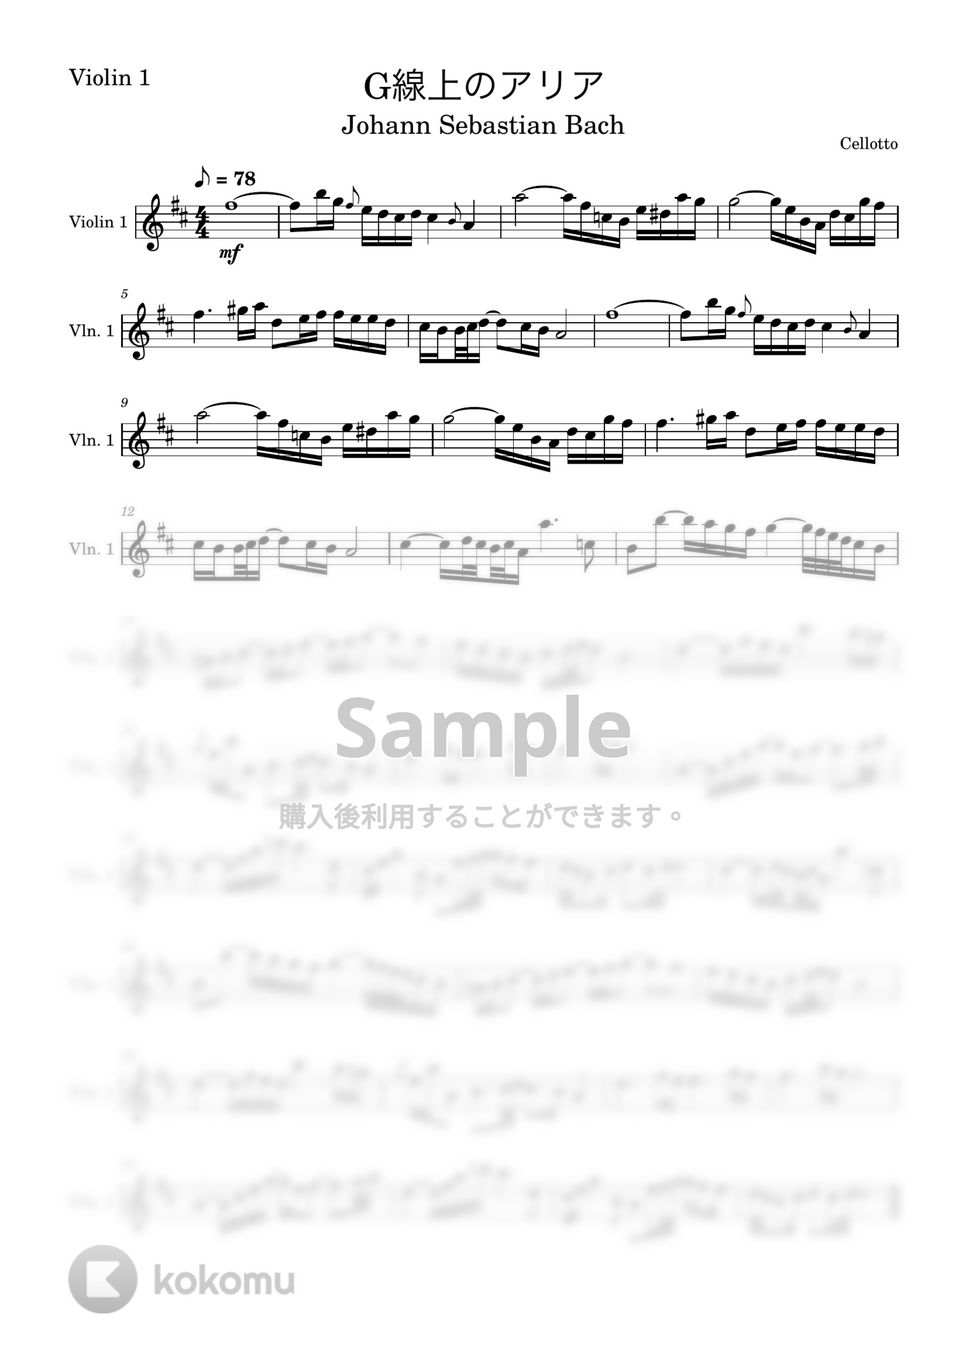 バッハ - G線上のアリア (ヴァイオリン1-弦楽四重奏) by Cellotto